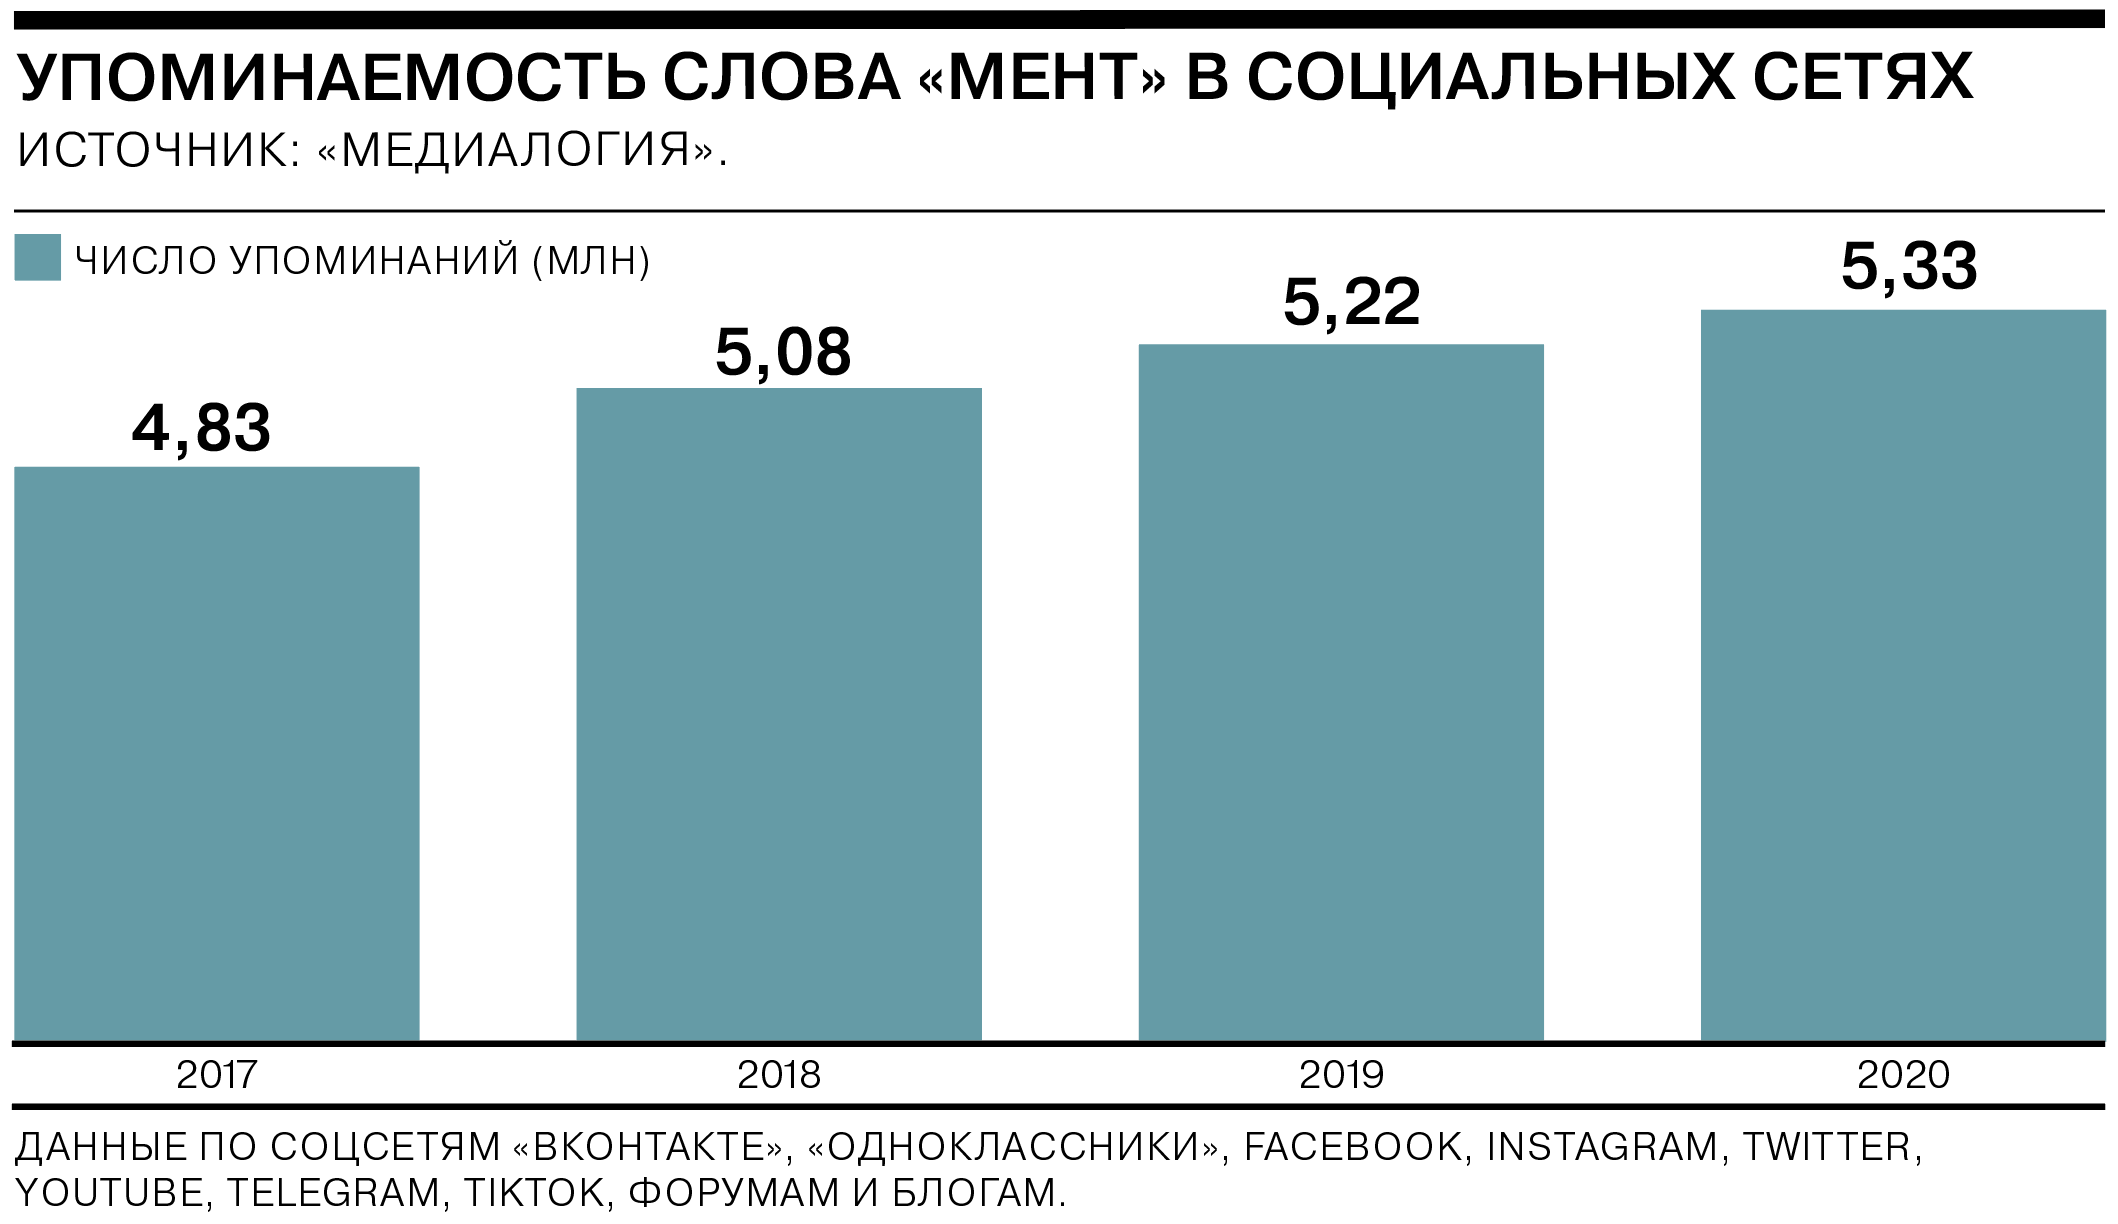 https://im.kommersant.ru/ISSUES.PHOTO/CORP/2021/02/05/6%D1%81%D0%BE%D1%86%D1%81%D0%B5%D1%82%D0%B8.png